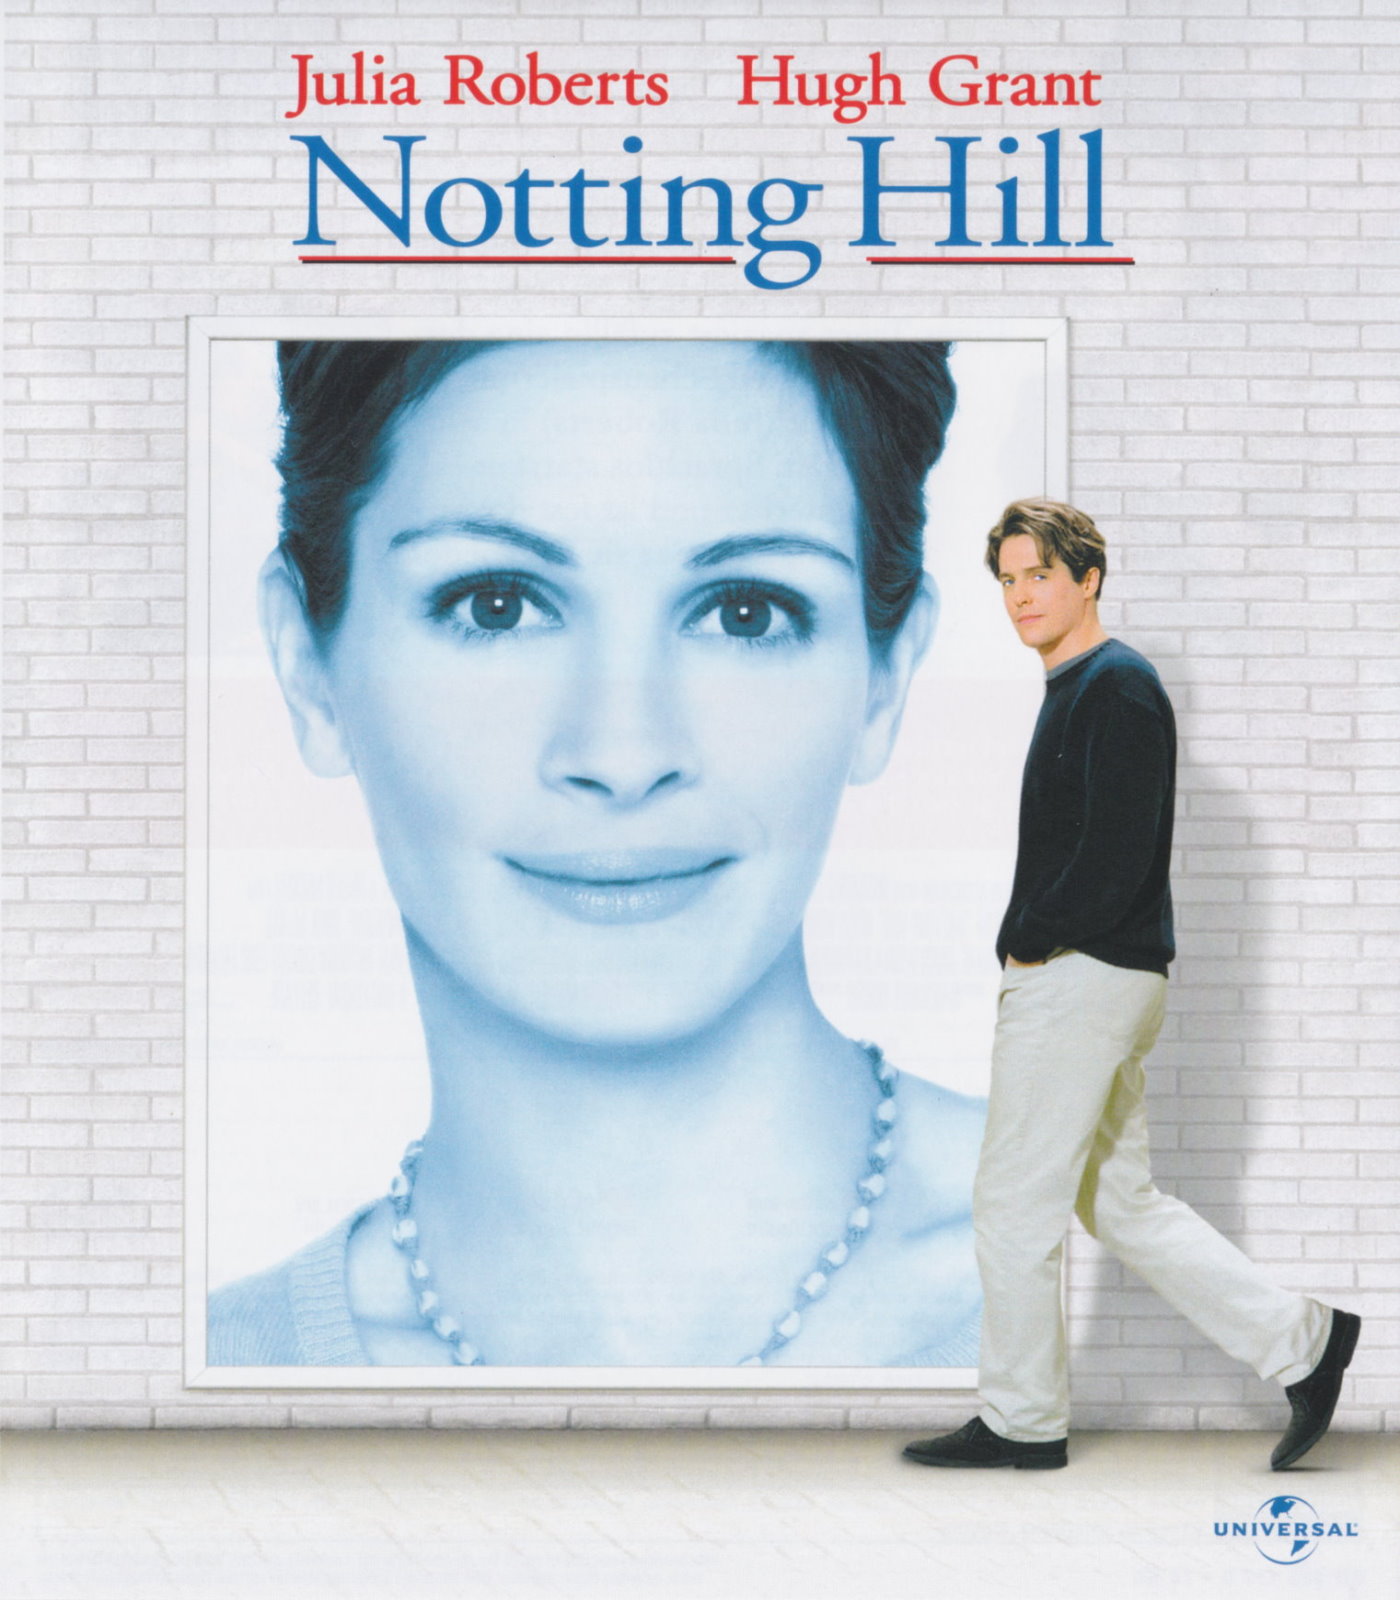 Cover - Notting Hill.jpg